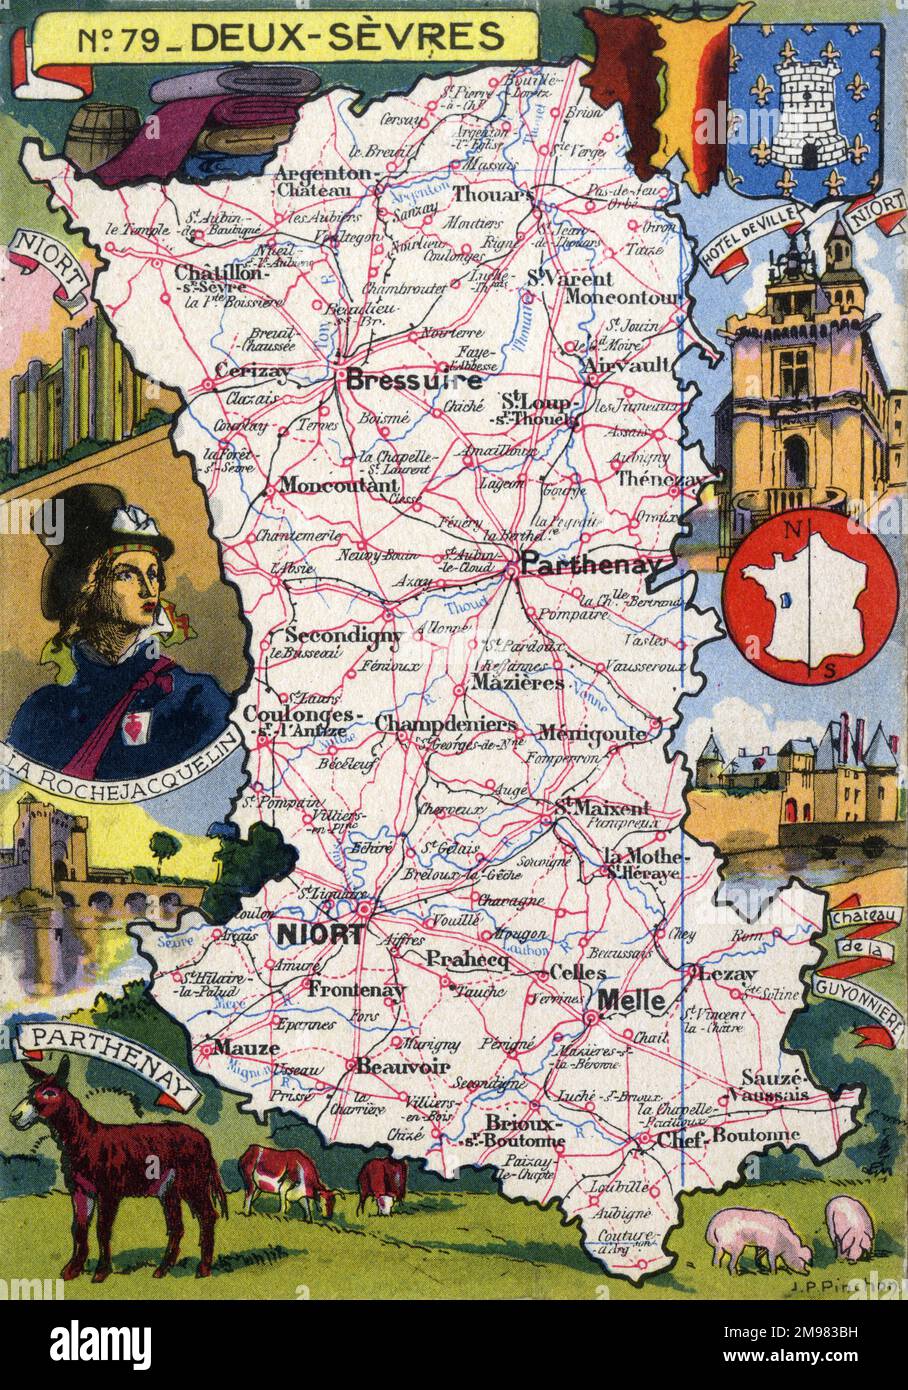 Mappa del Dipartimento francese di Deux-Sevres - No.79, con illustrazioni inset del Castello di Niort e del Municipio, lo Chateau de la Guyonnierre e un ritratto di Henri du Vergier, comte de la Rochejaquelein, il più giovane generale dell'insurrezione venea reale durante la Rivoluzione francese. Foto Stock